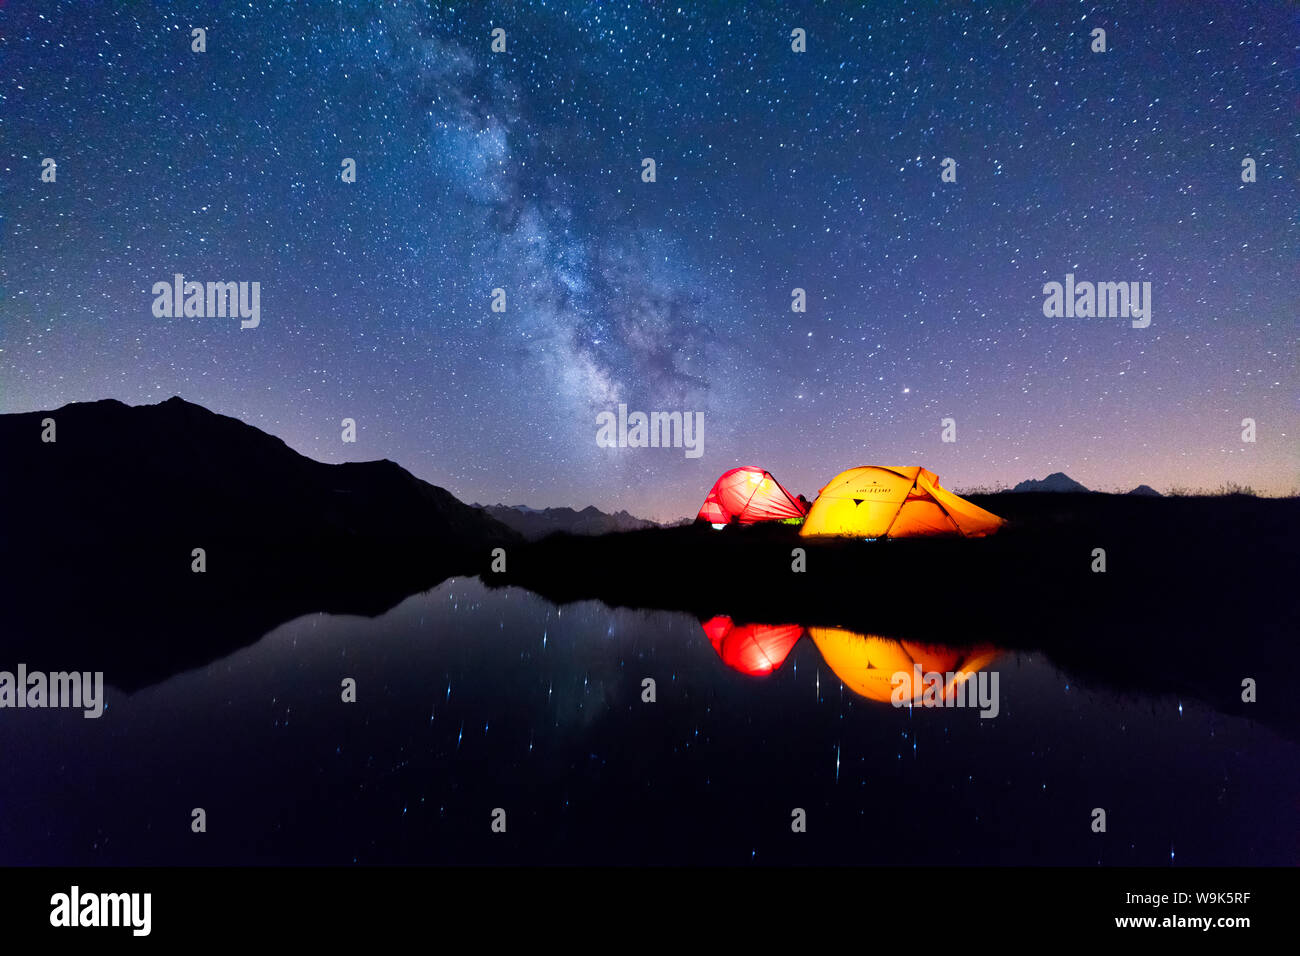 Tentes reflète dans le lac alpin sur une nuit étoilée, Mont de la Saxe, Courmayeur, vallée d'aoste, Italie, Europe Banque D'Images